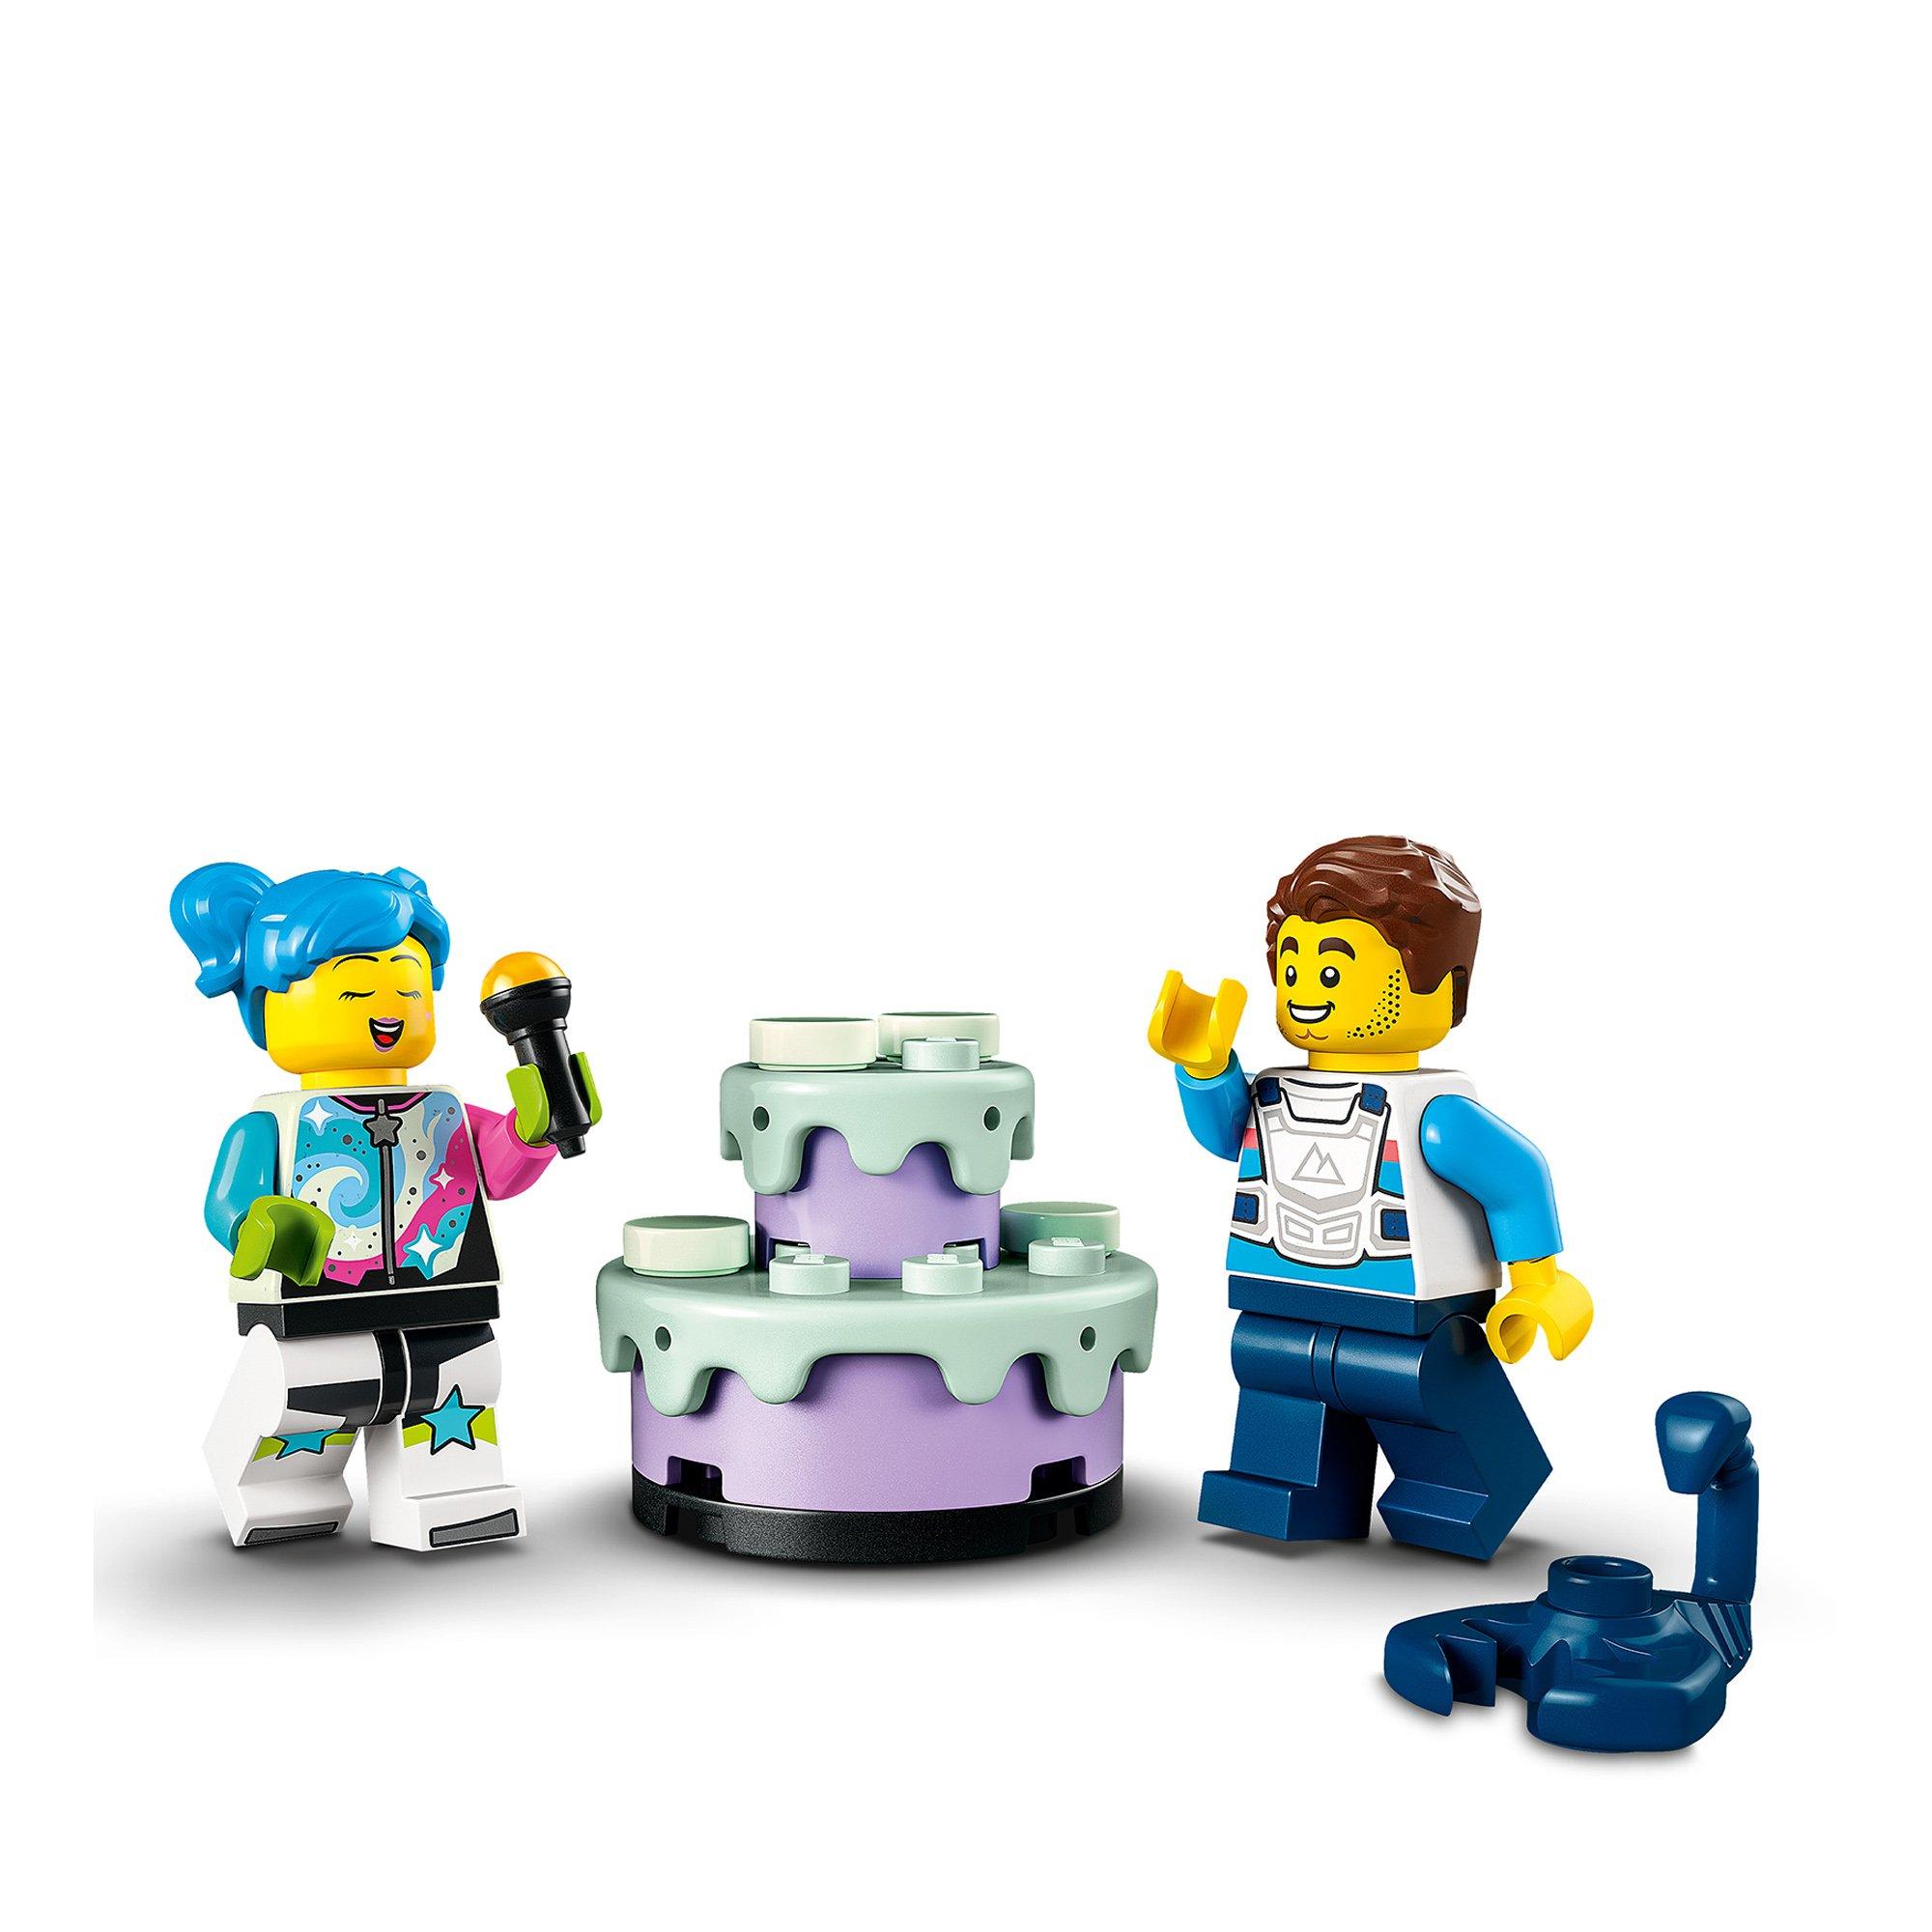 LEGO®  60341 Sfida acrobatica KO 